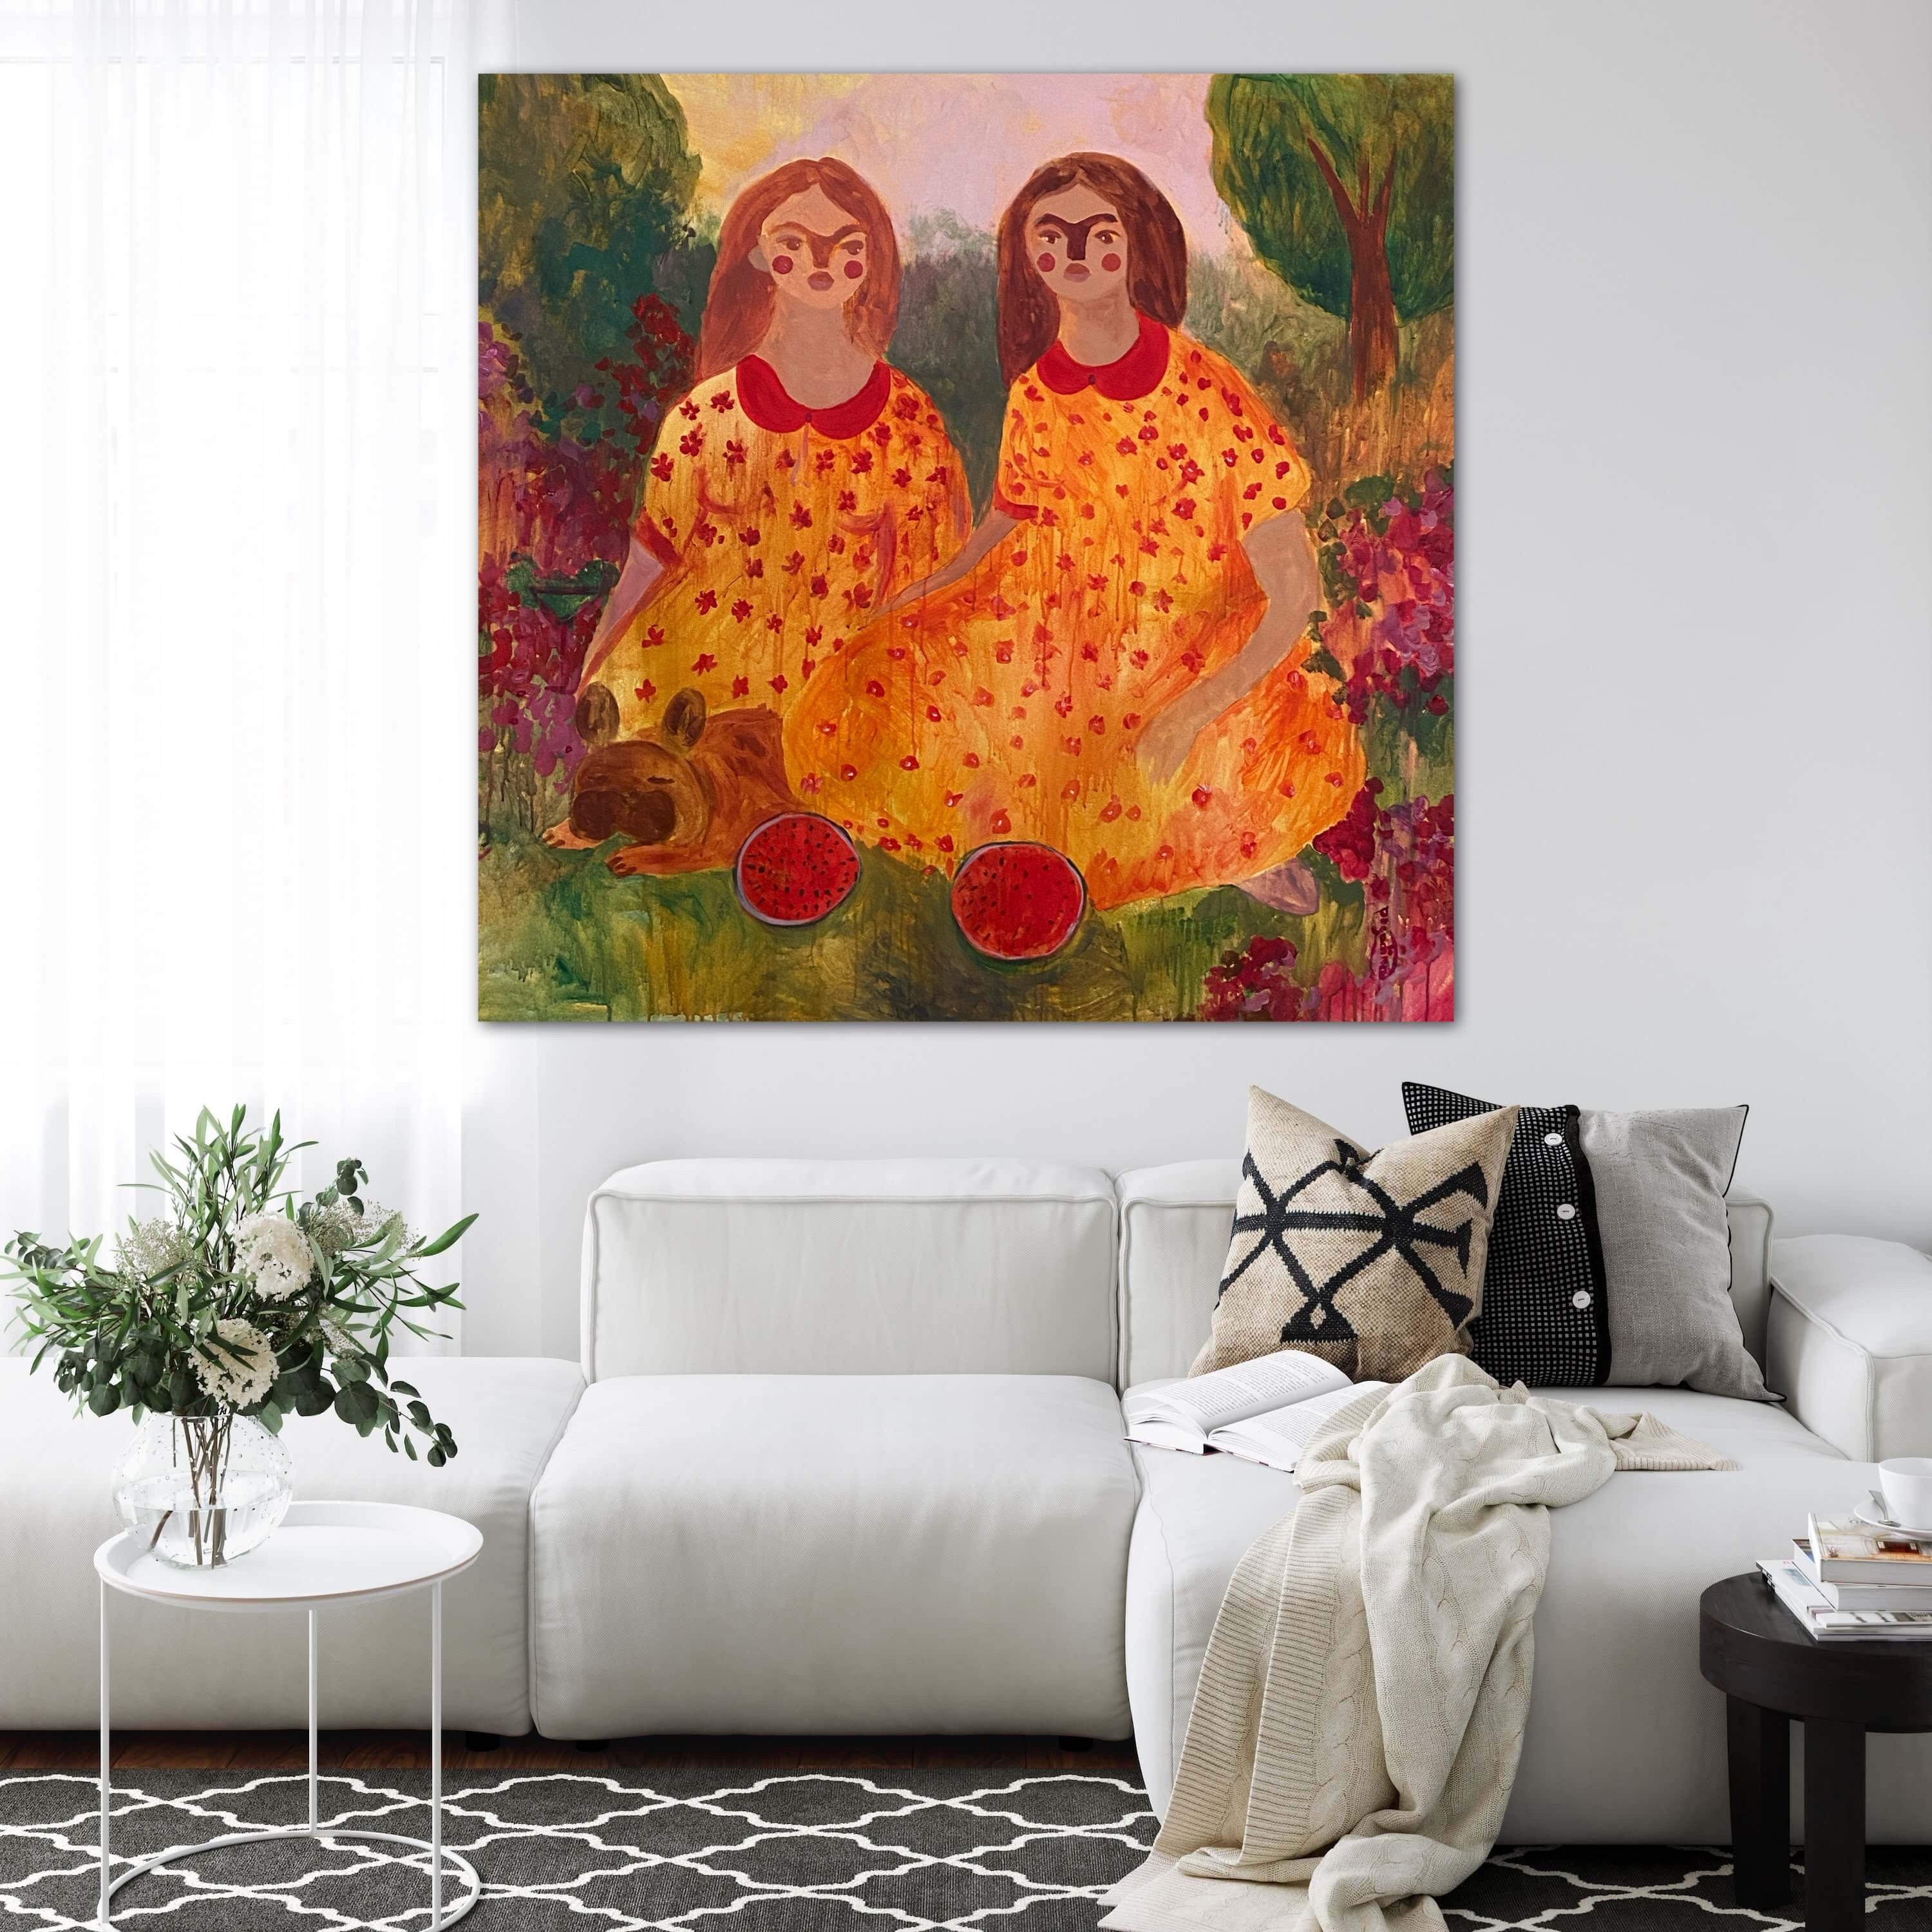 Schwestern bei einer Picnic im Garten (Impressionismus), Painting, von Dasha Pogodina